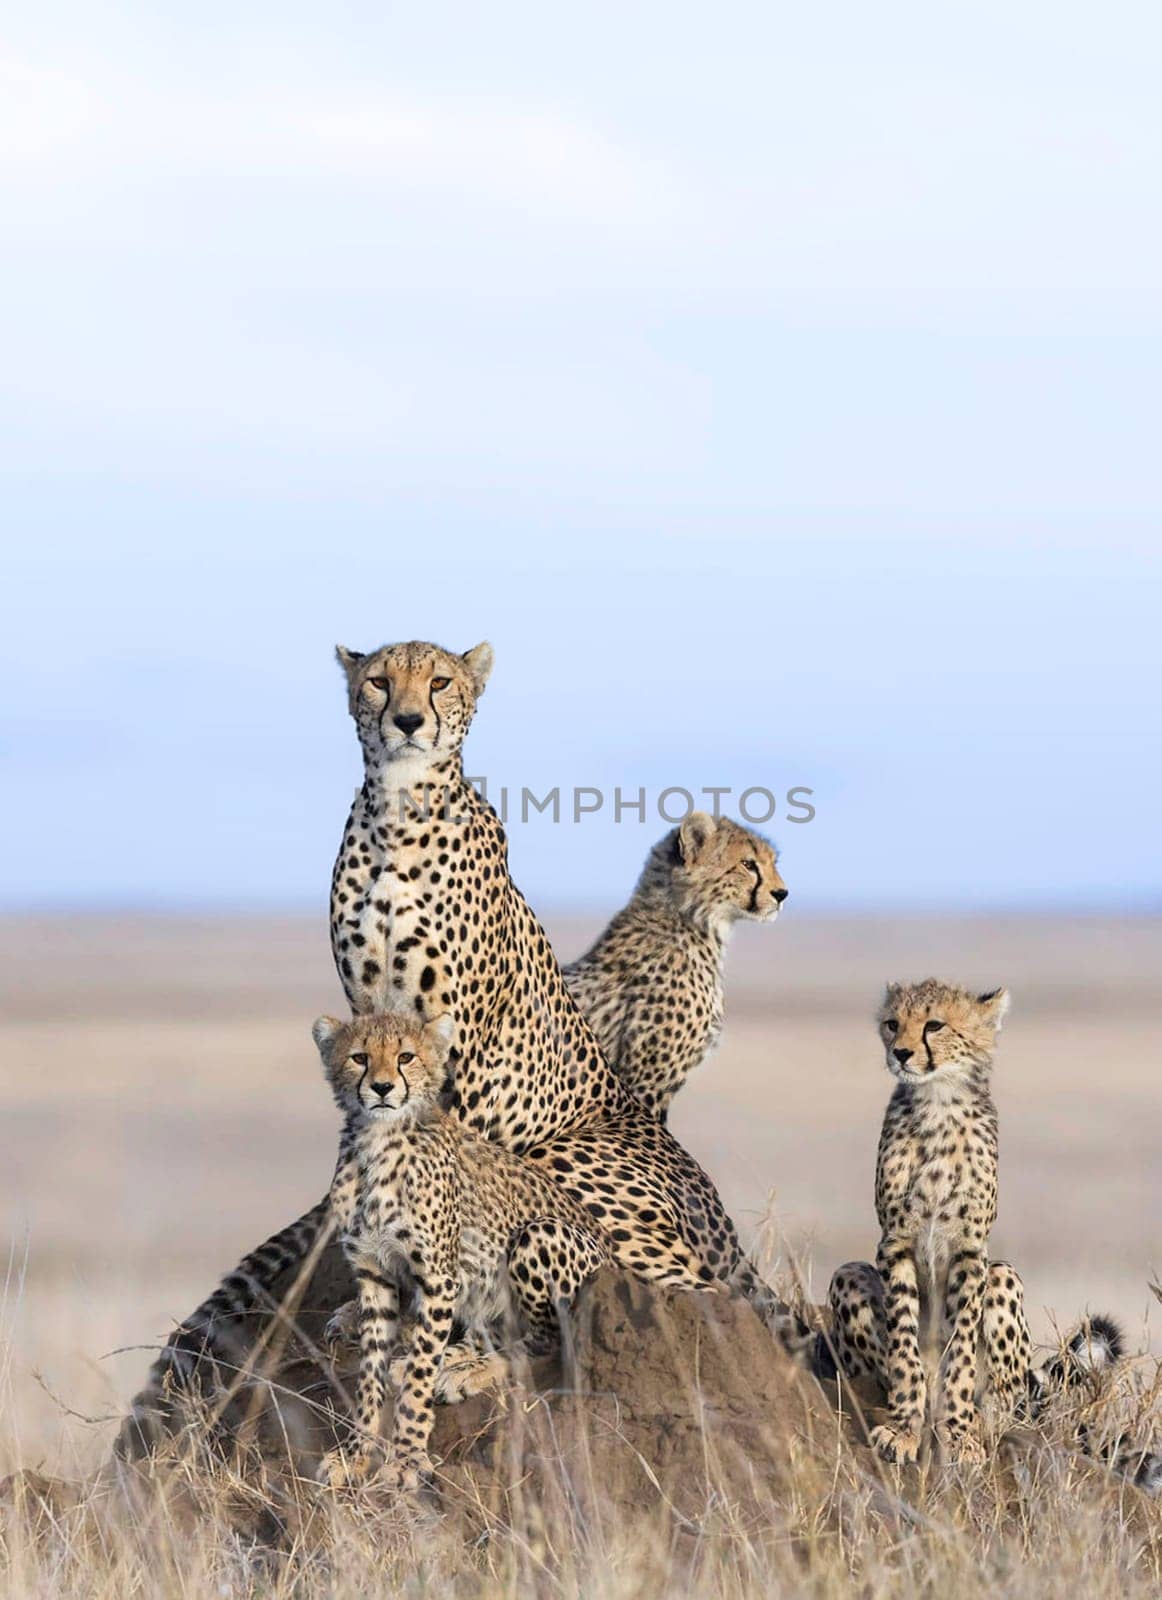 Beautiful and Breathtaking wildlife in Tanzania